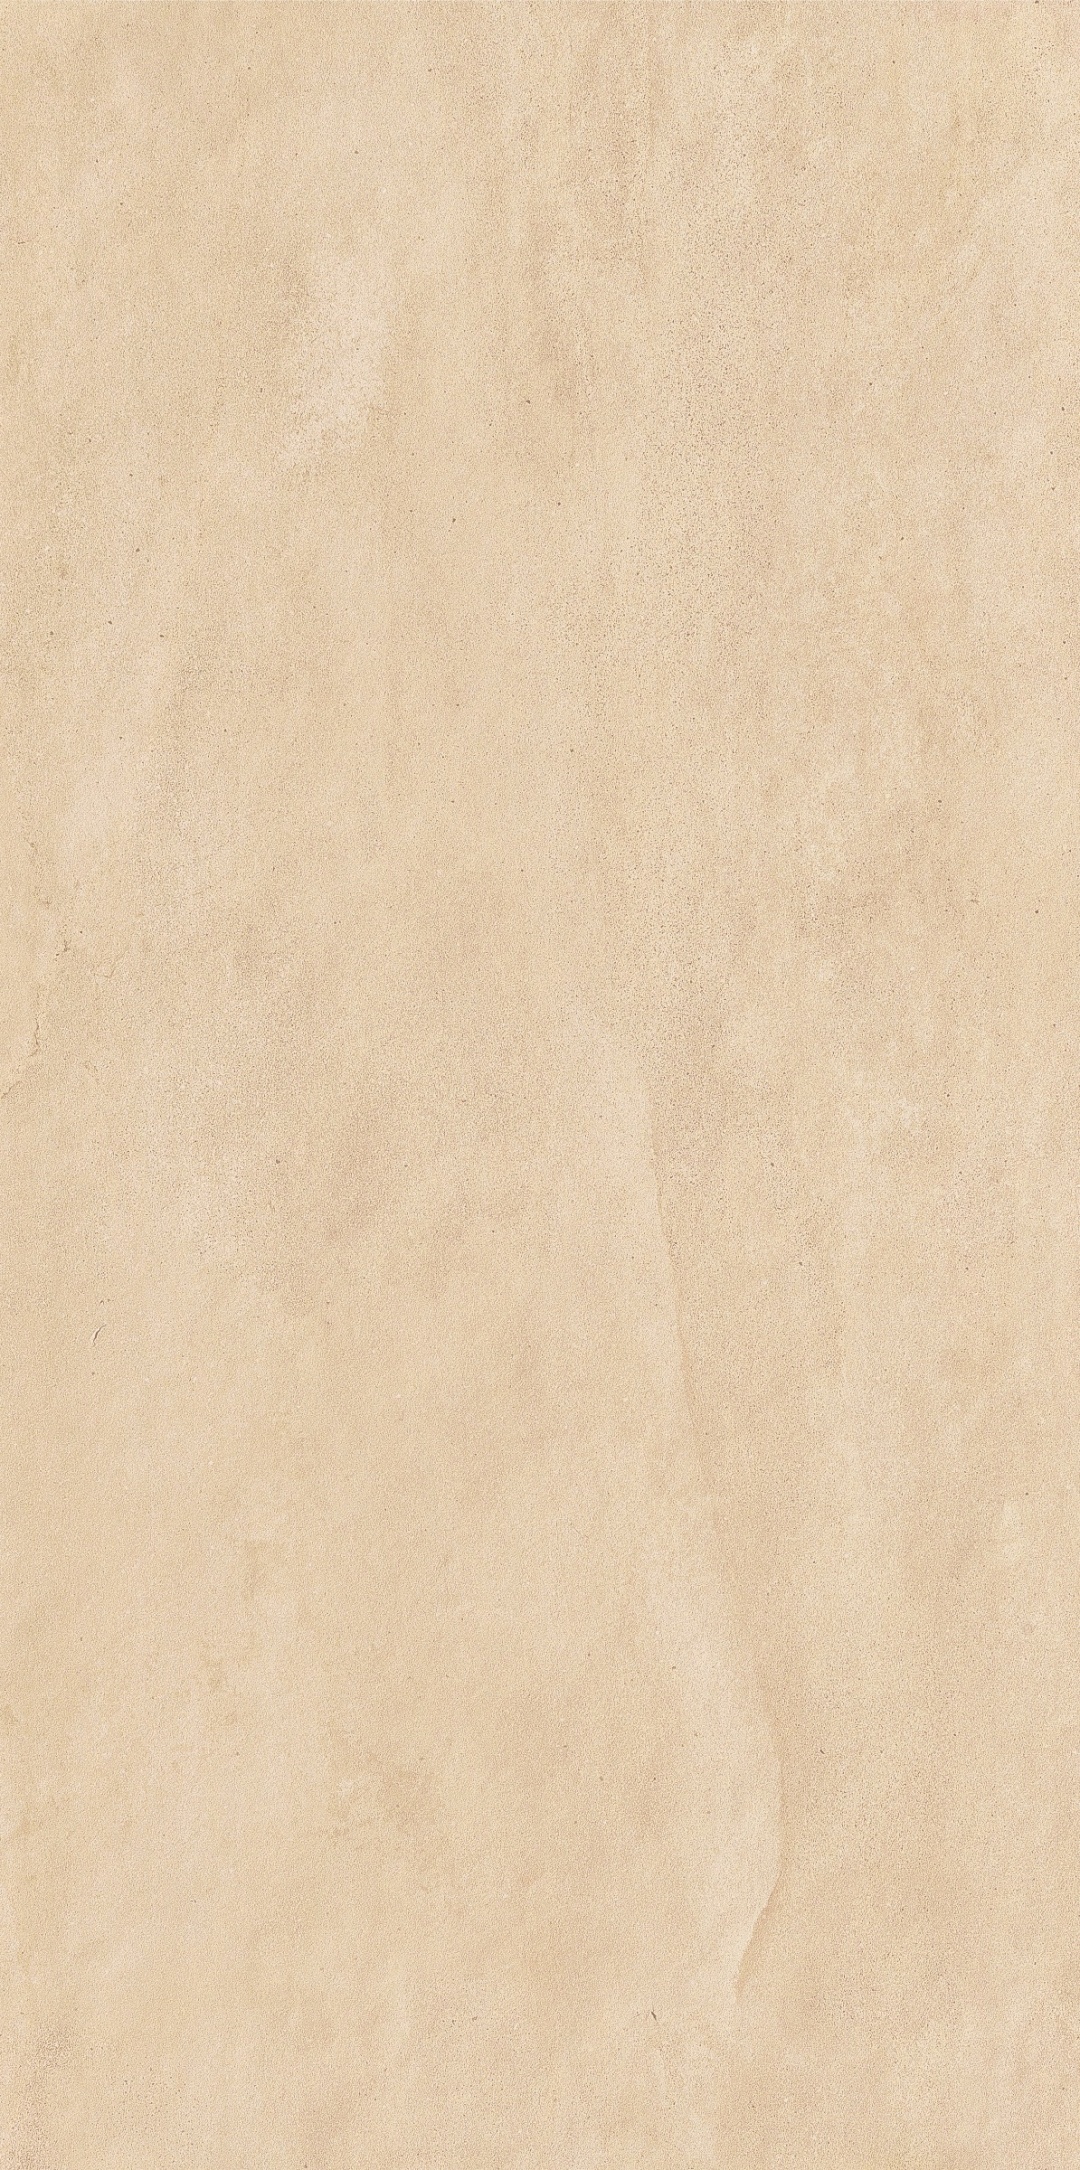 惠达瓷砖西沙系列|质感与视觉碰撞 让空间充满遐想(图33)